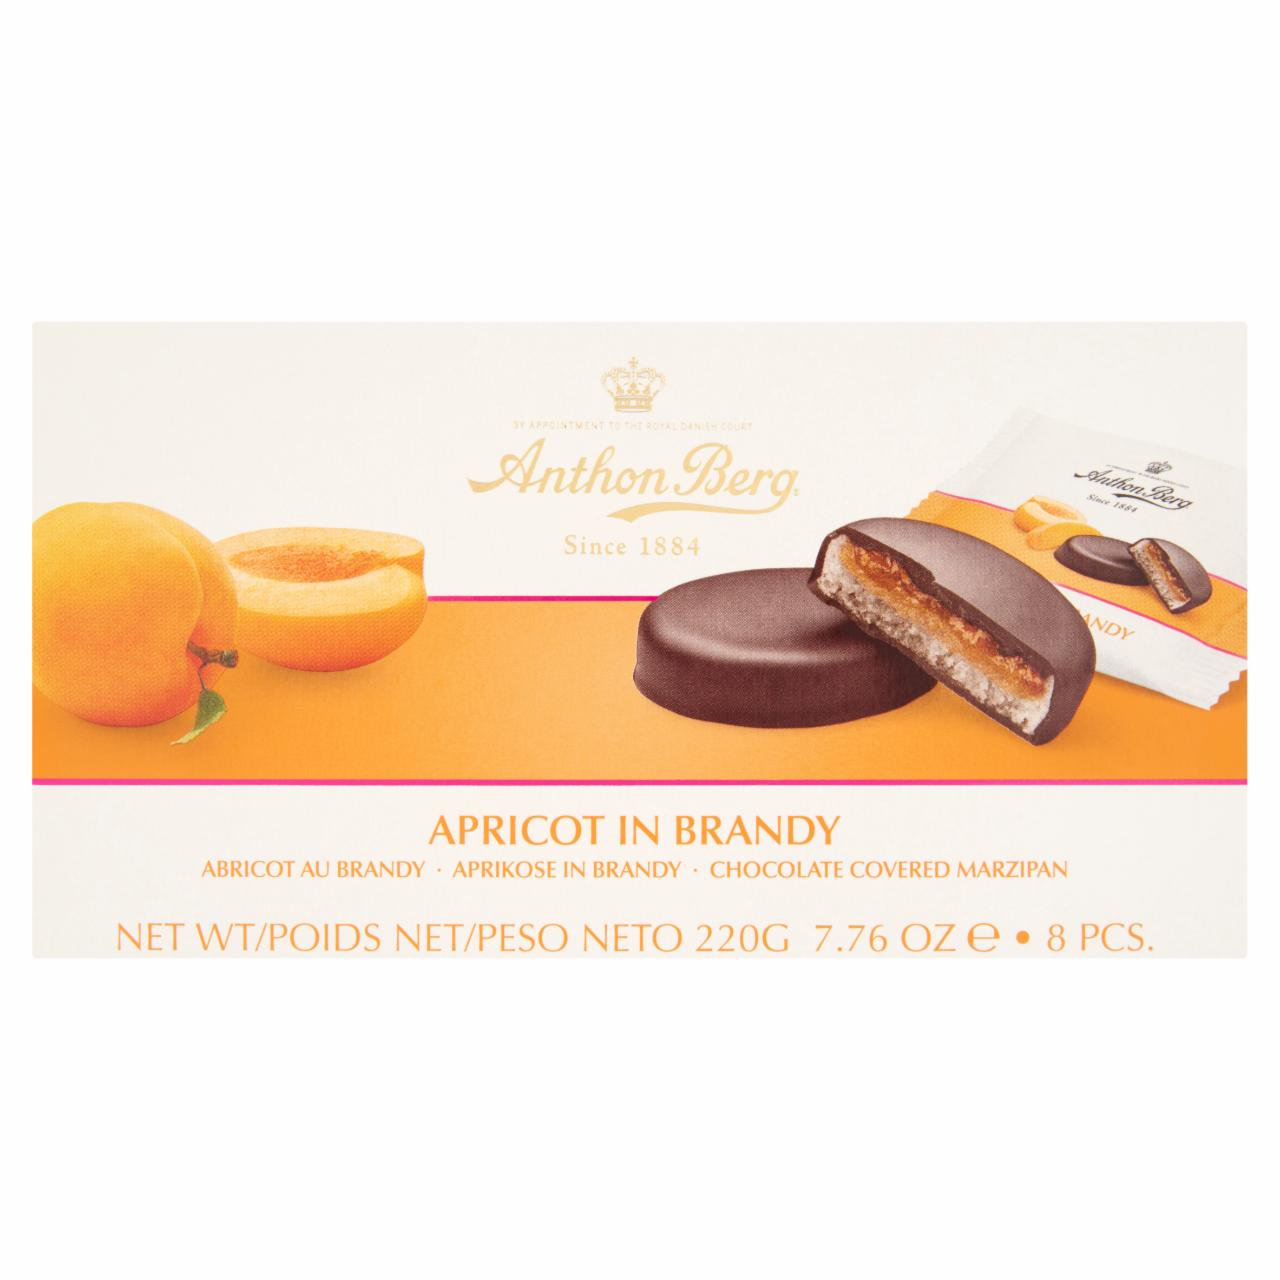 Képek - Anthon Berg csokoládé marcipánnal és konyakban lévő sárgabarackkal töltve 8 db 220 g